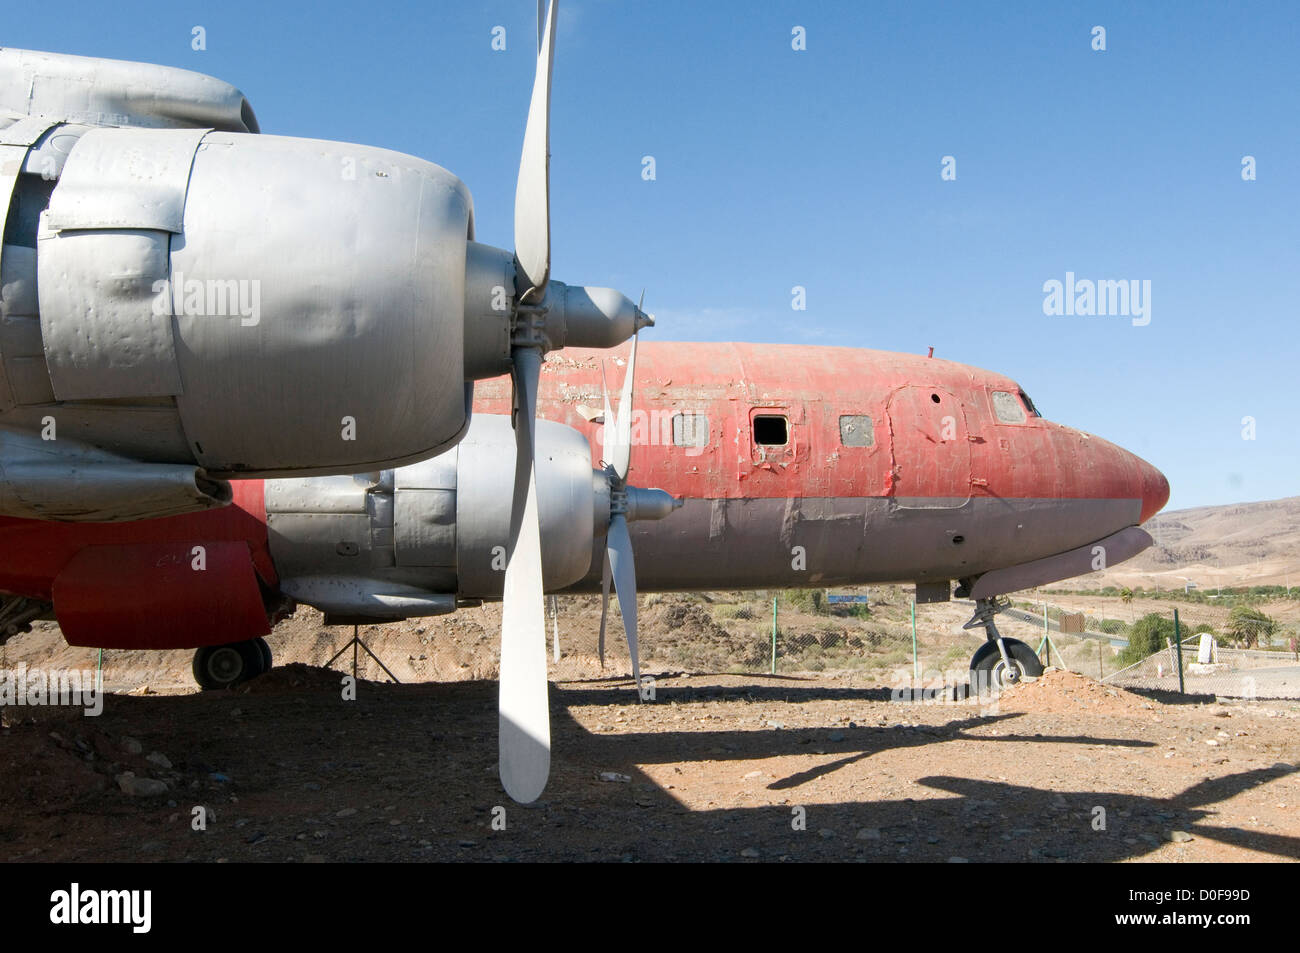 Avion de l'abandon des Platanes Platanes avions avions avions avion Douglas DC-6 cimetière pourriture pourriture aluminium shell forlorn Banque D'Images